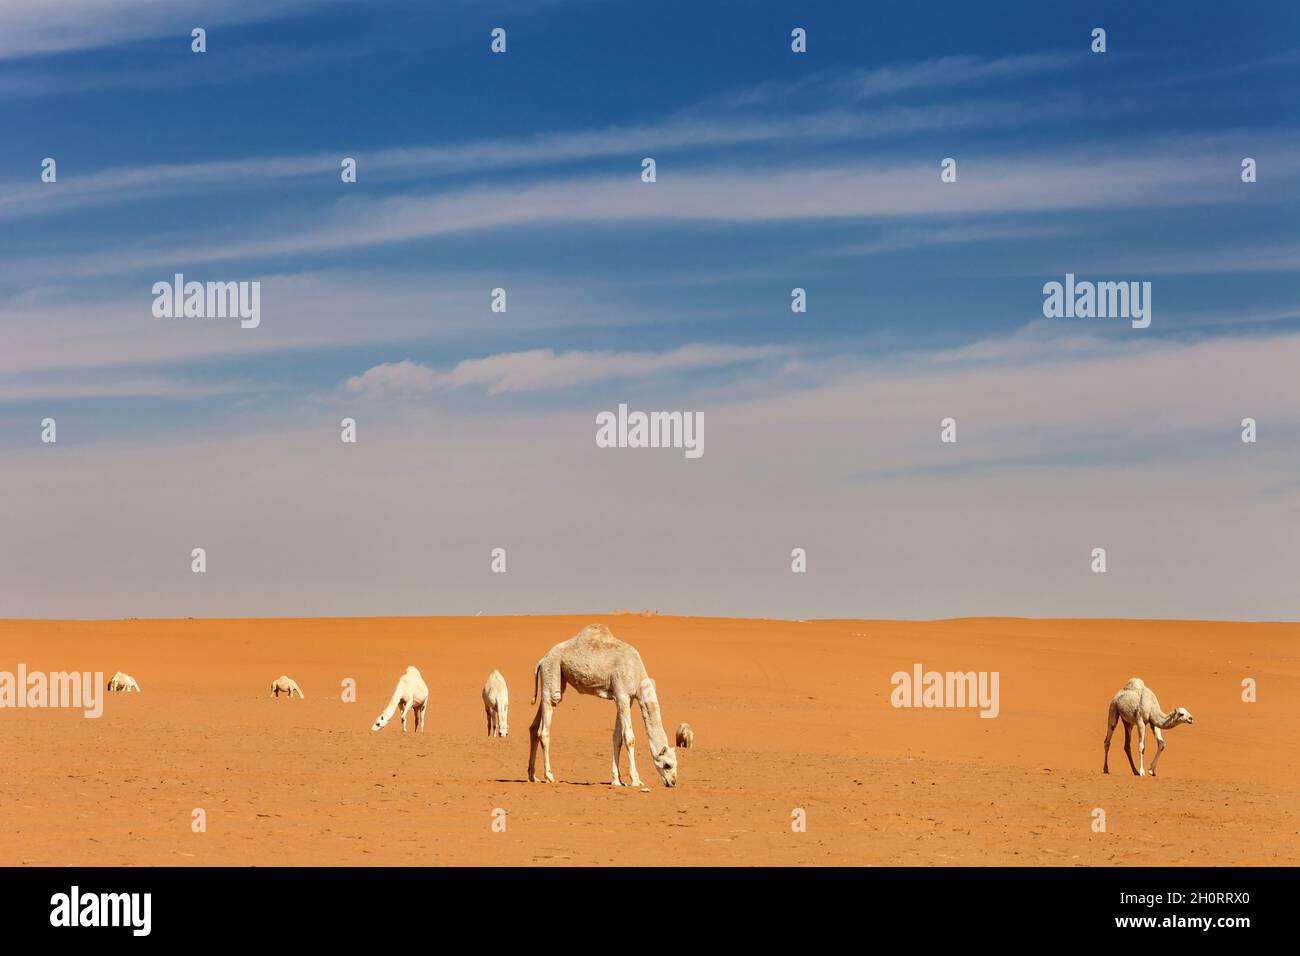 Caravan of camels in the desert, Saudi Arabia Stock Photo